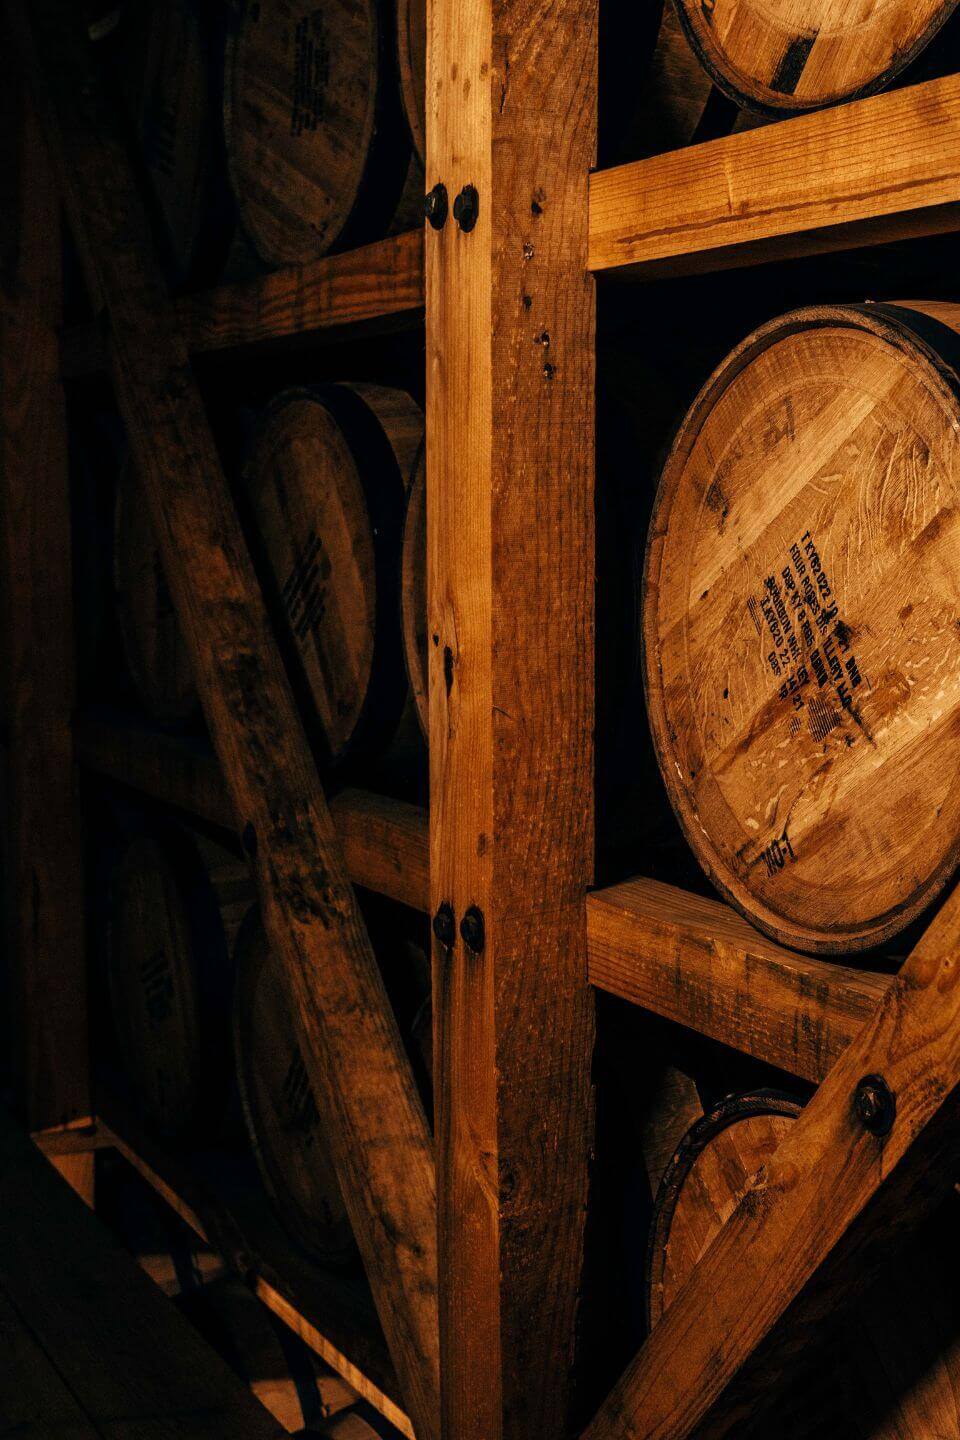 Four Roses bourbon barrels